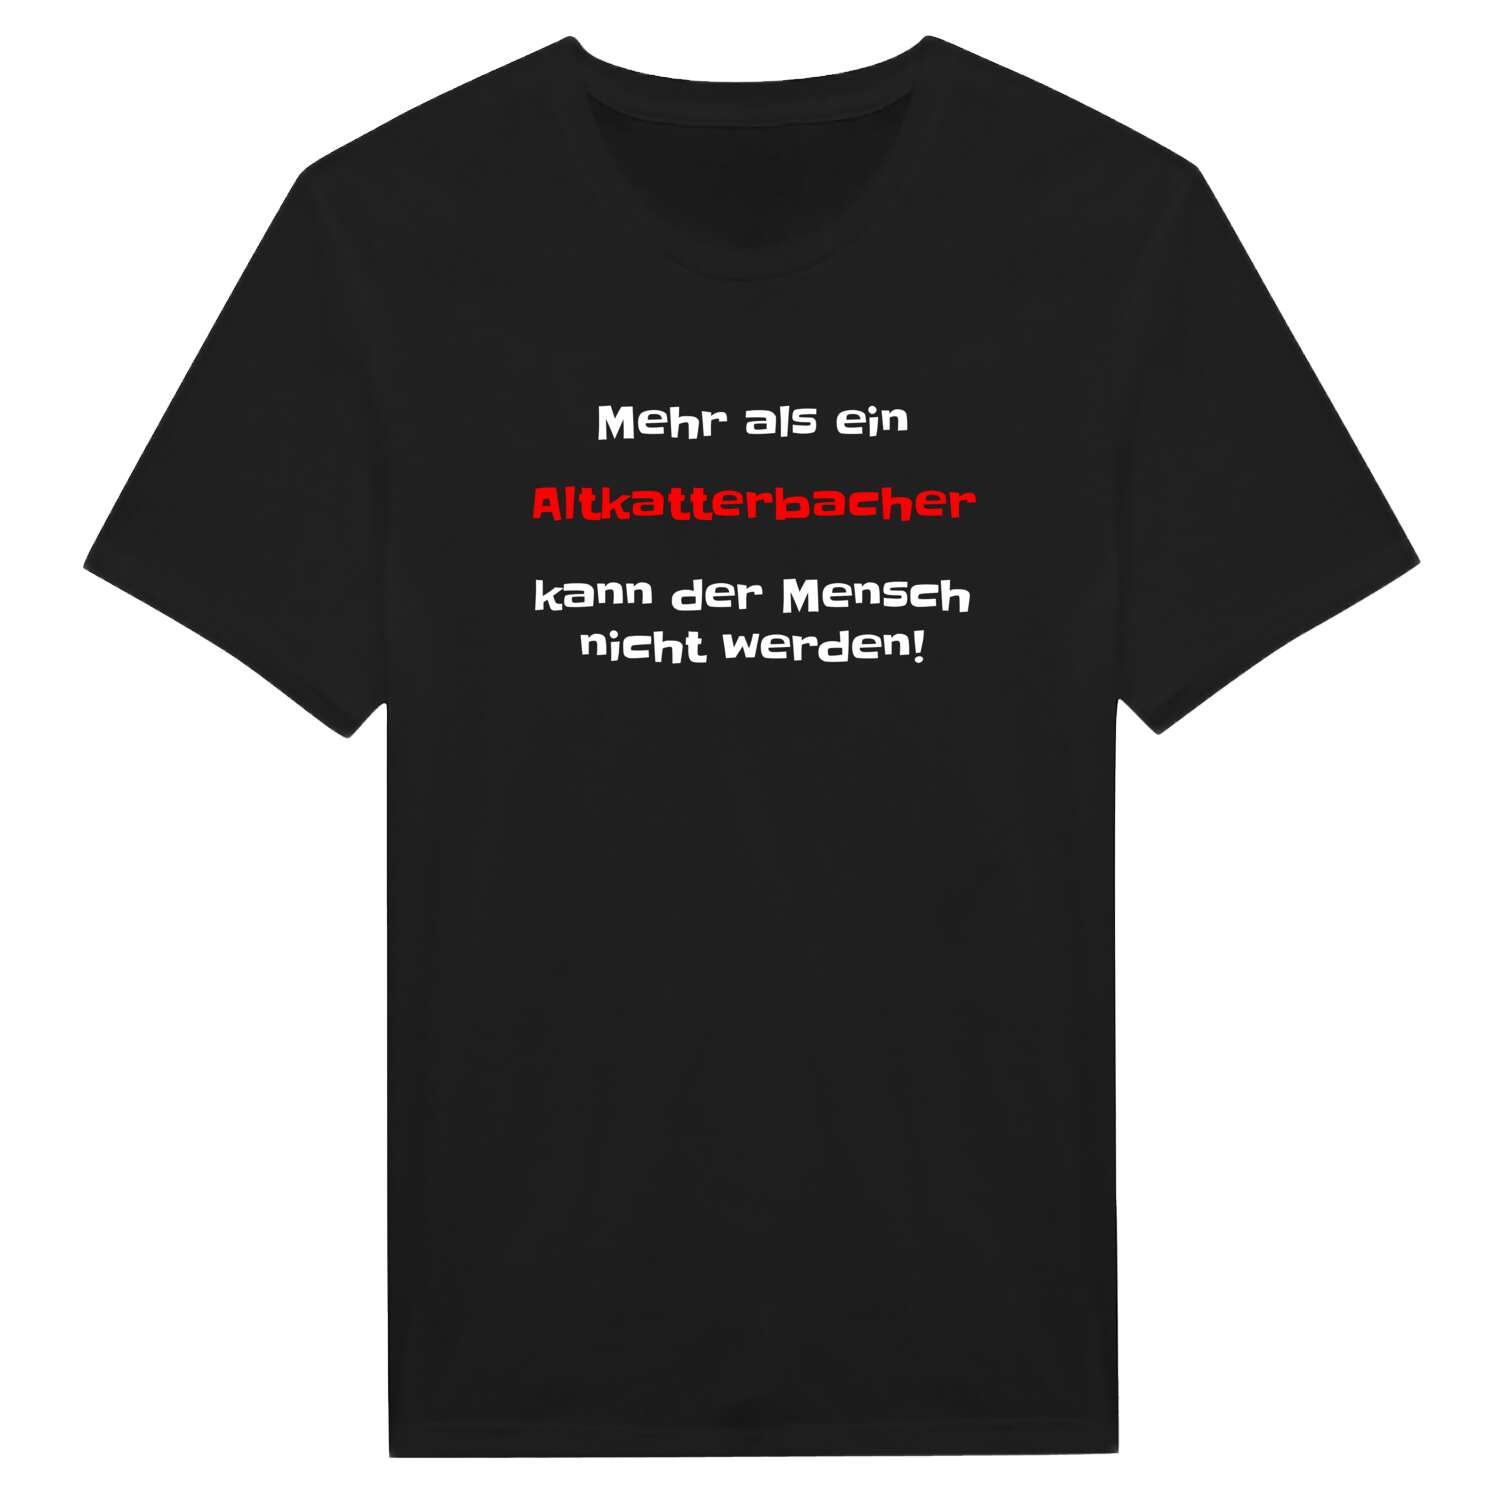 Altkatterbach T-Shirt »Mehr als ein«